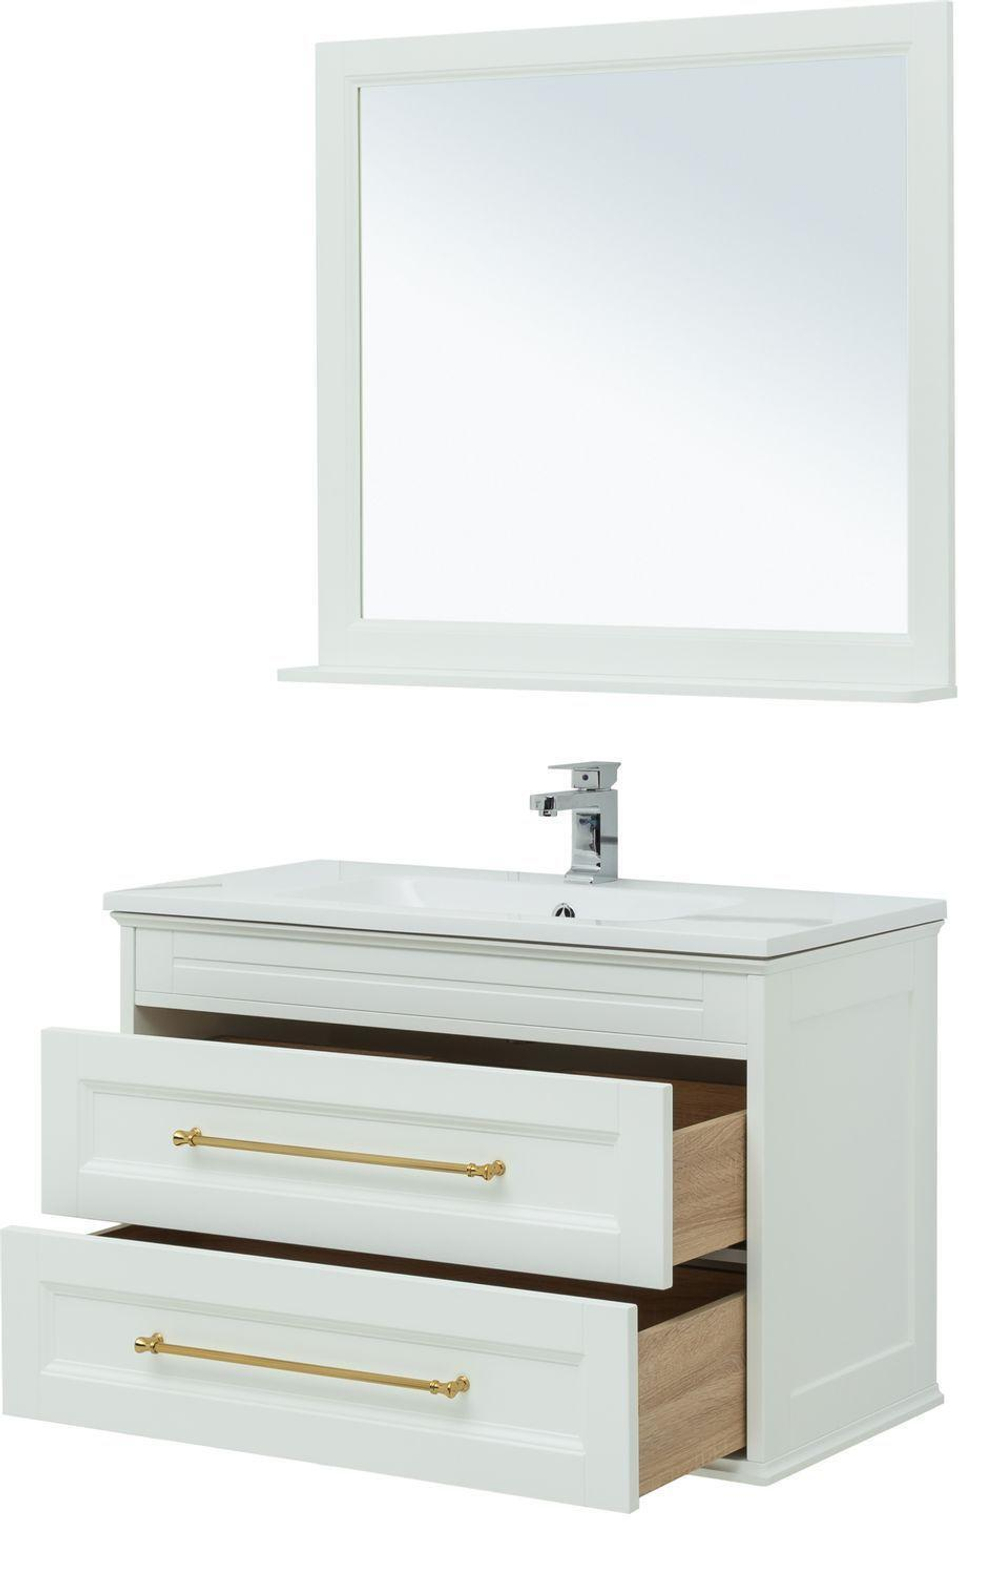 Мебель для ванной Aquanet Бостон М 100 белый (ручки золото) (лит. мрамор)